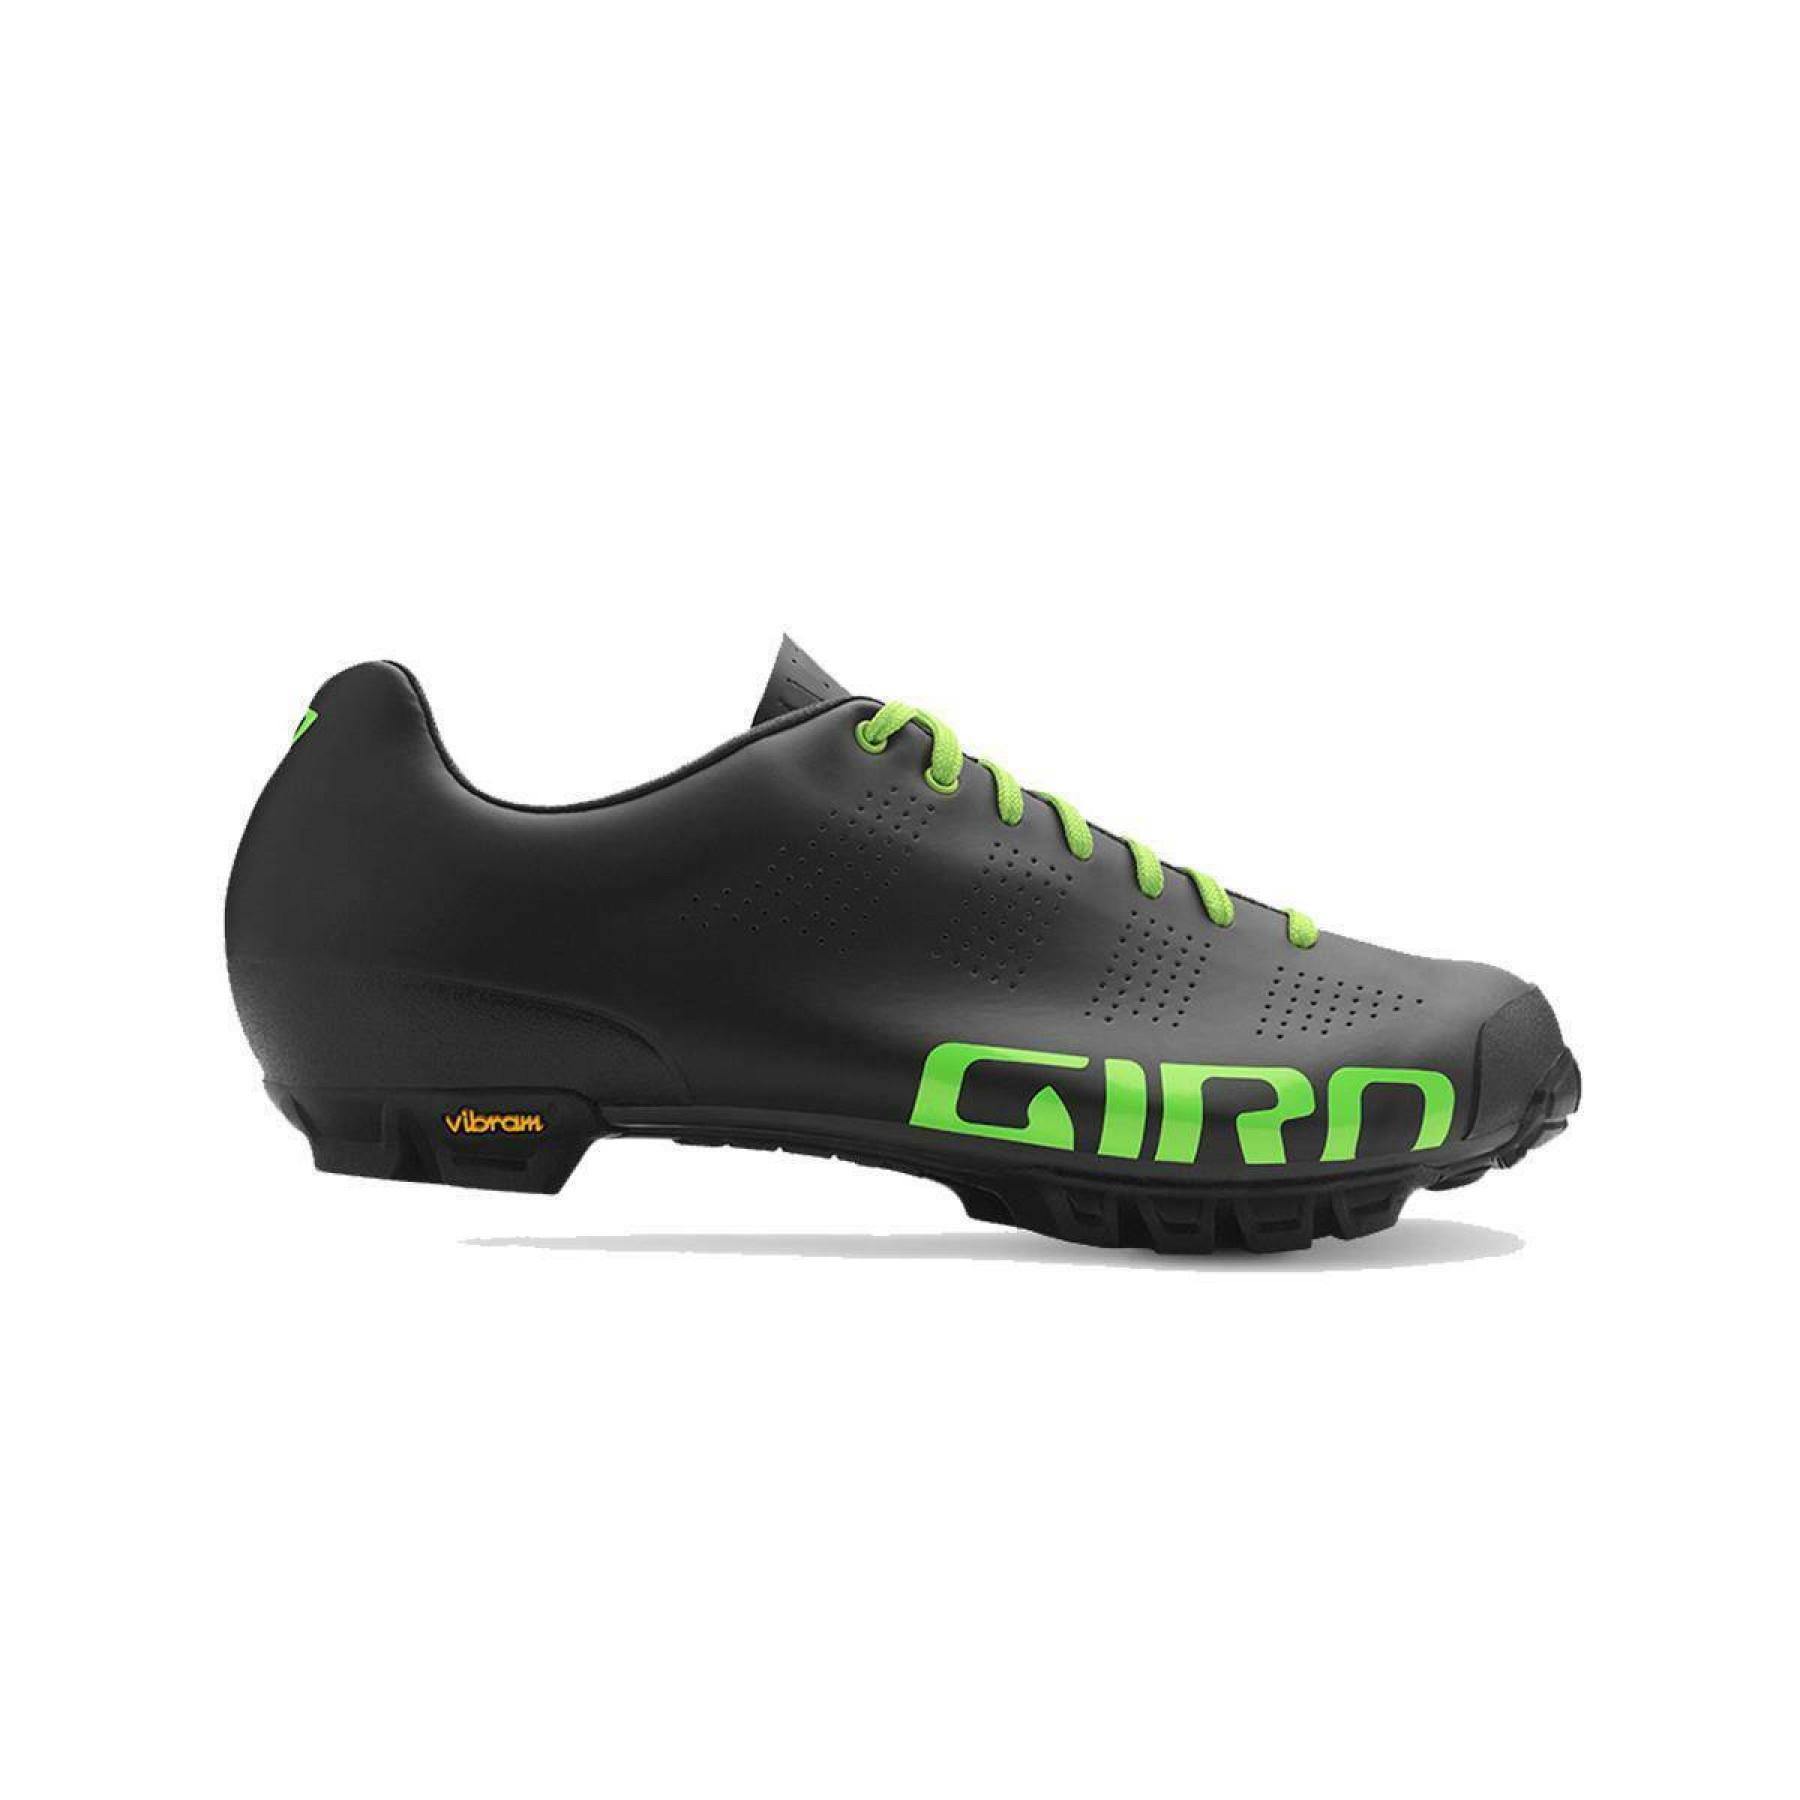 Schuhe Giro Empire Vr90